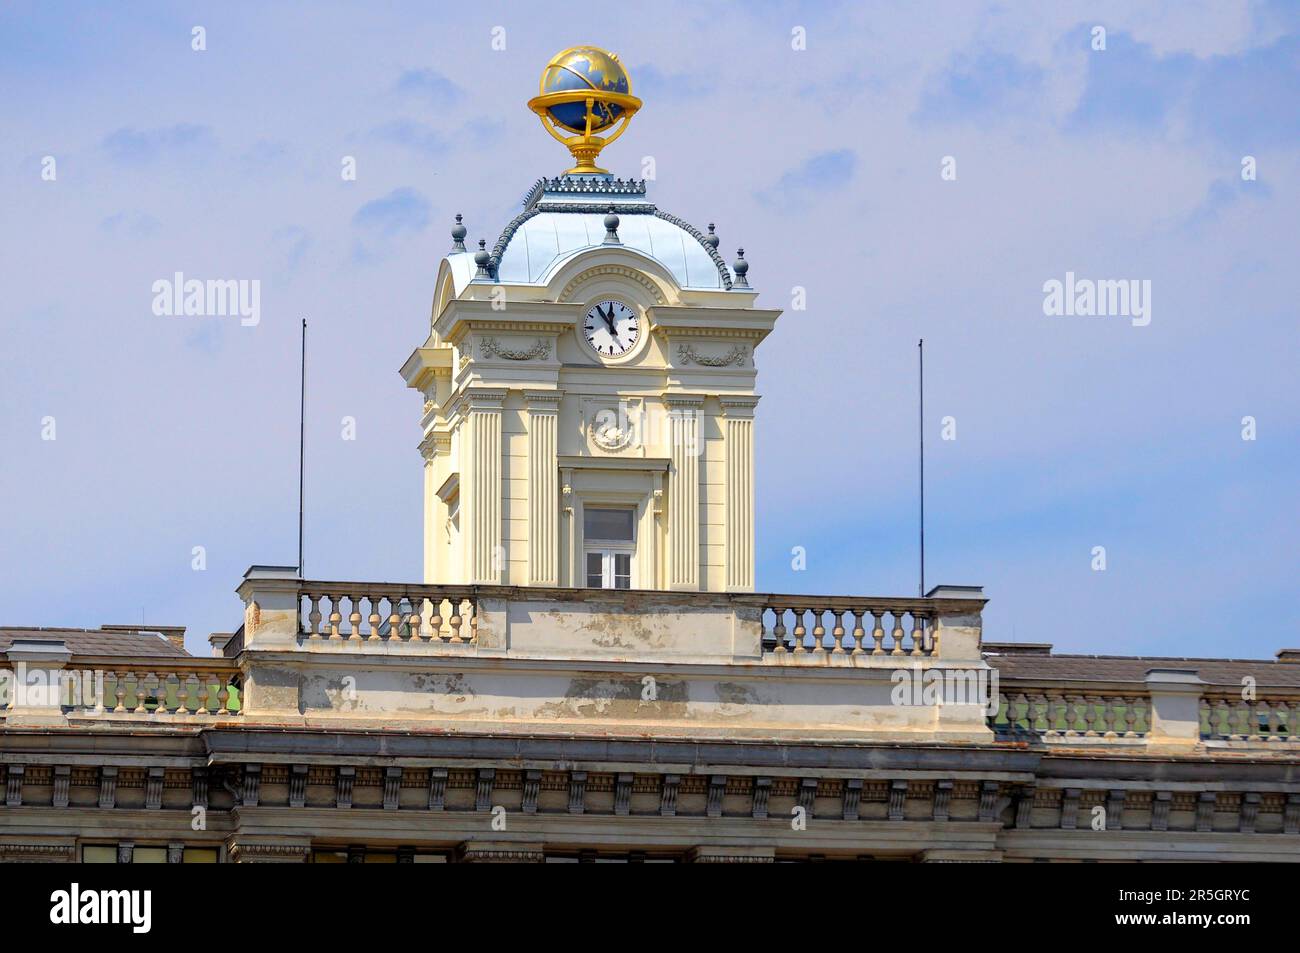 Autriche, Vienne, globe sur le toit Banque D'Images